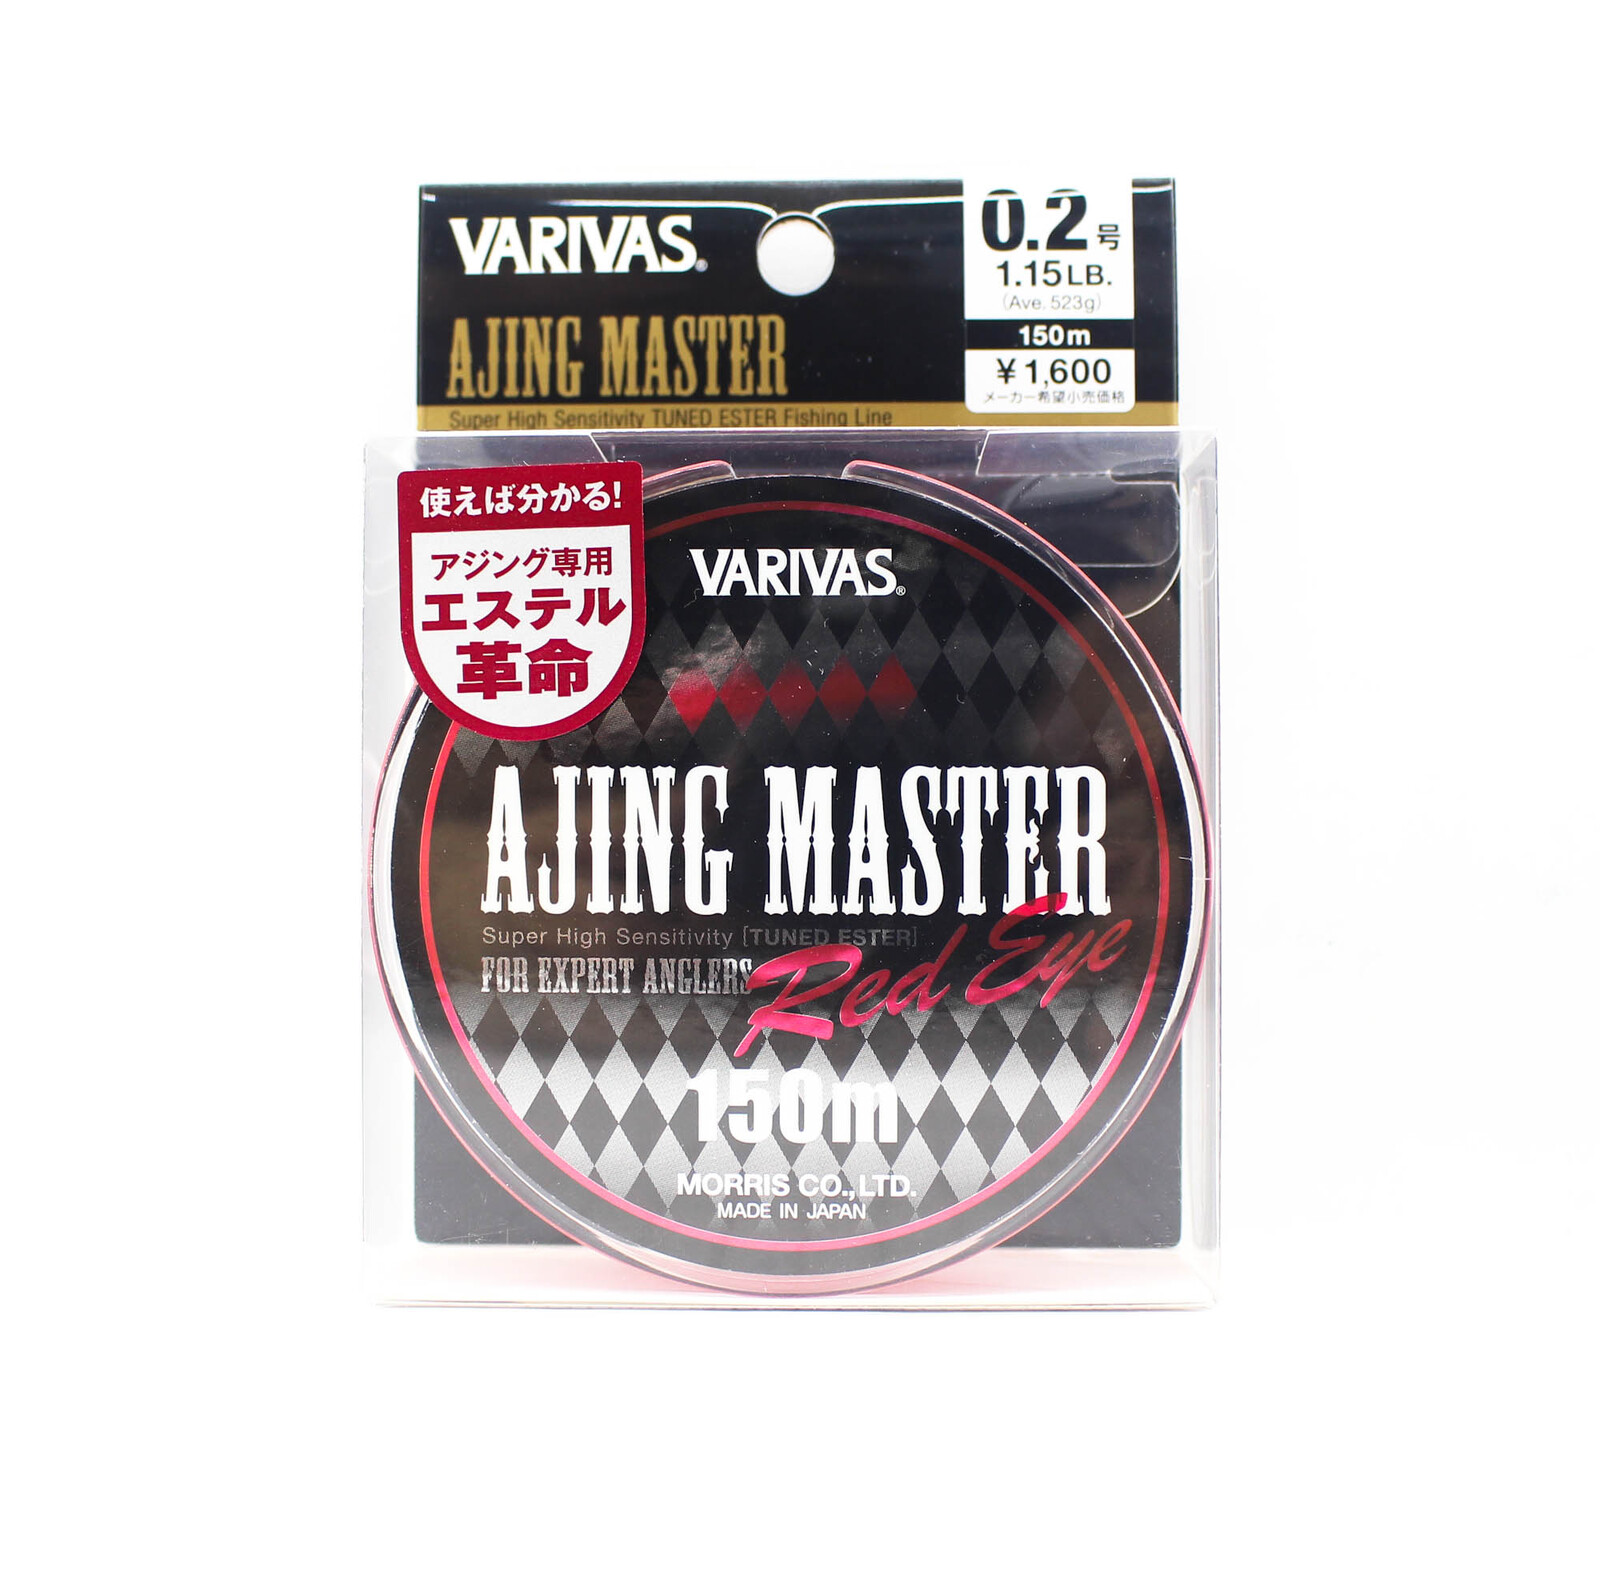 Varivas Ajing Master Polyester Ultra Light Fishing Line #1.15lb